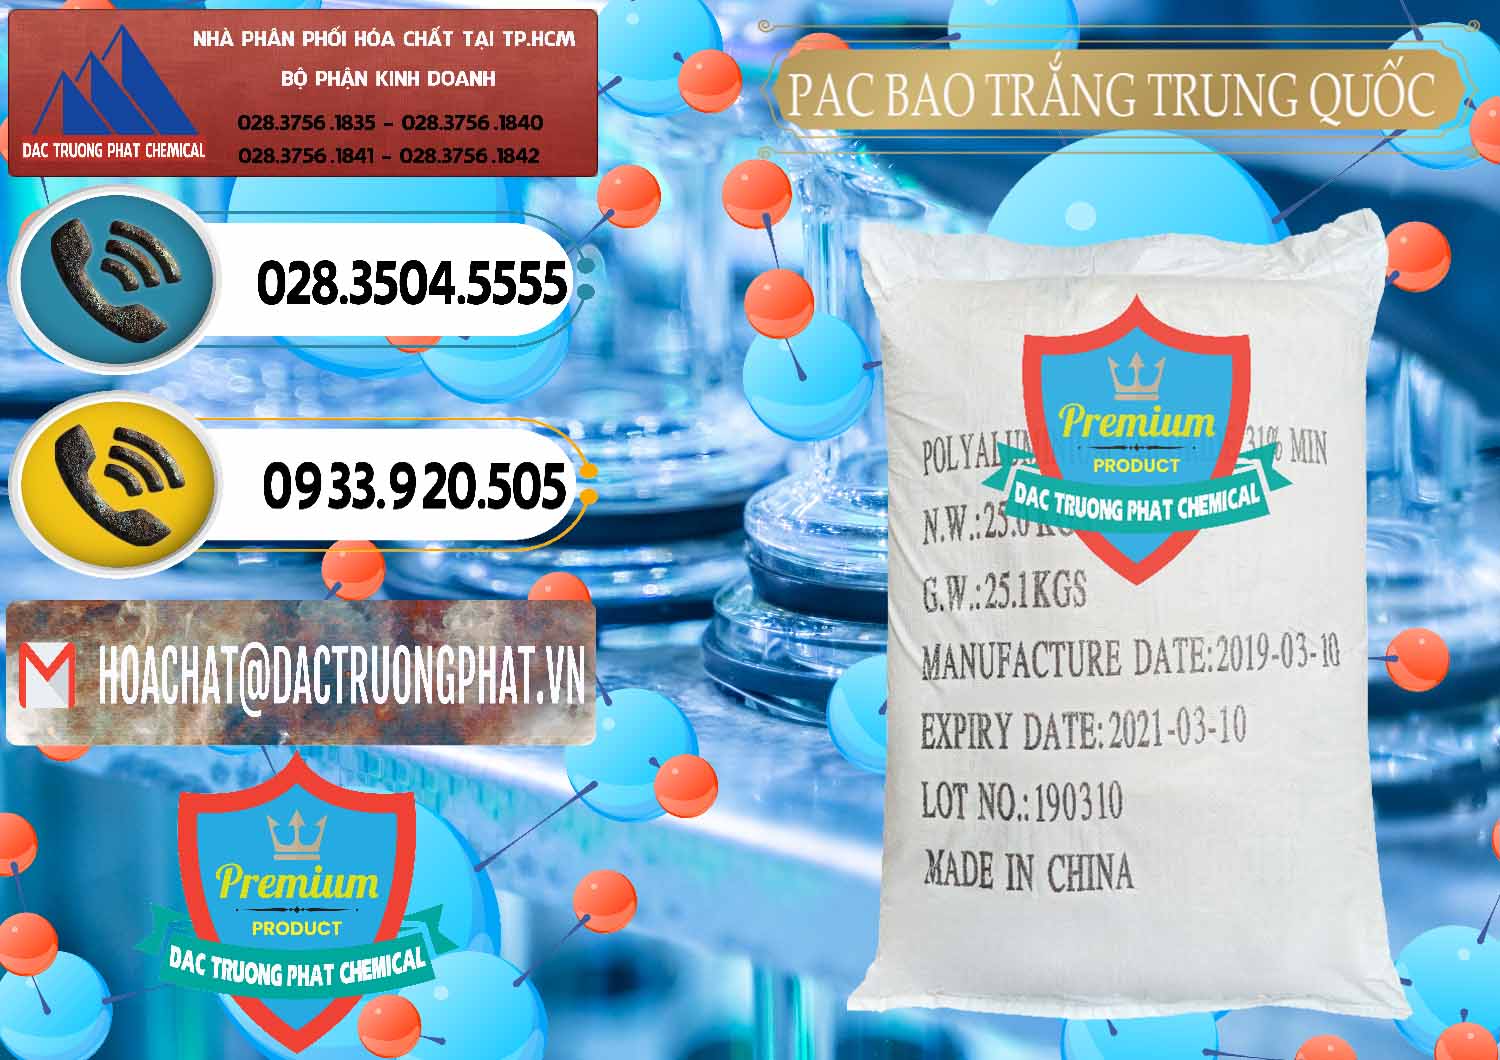 Chuyên kinh doanh & bán PAC - Polyaluminium Chloride Bao Trắng Trung Quốc China - 0108 - Cty chuyên phân phối _ bán hóa chất tại TP.HCM - hoachatdetnhuom.vn